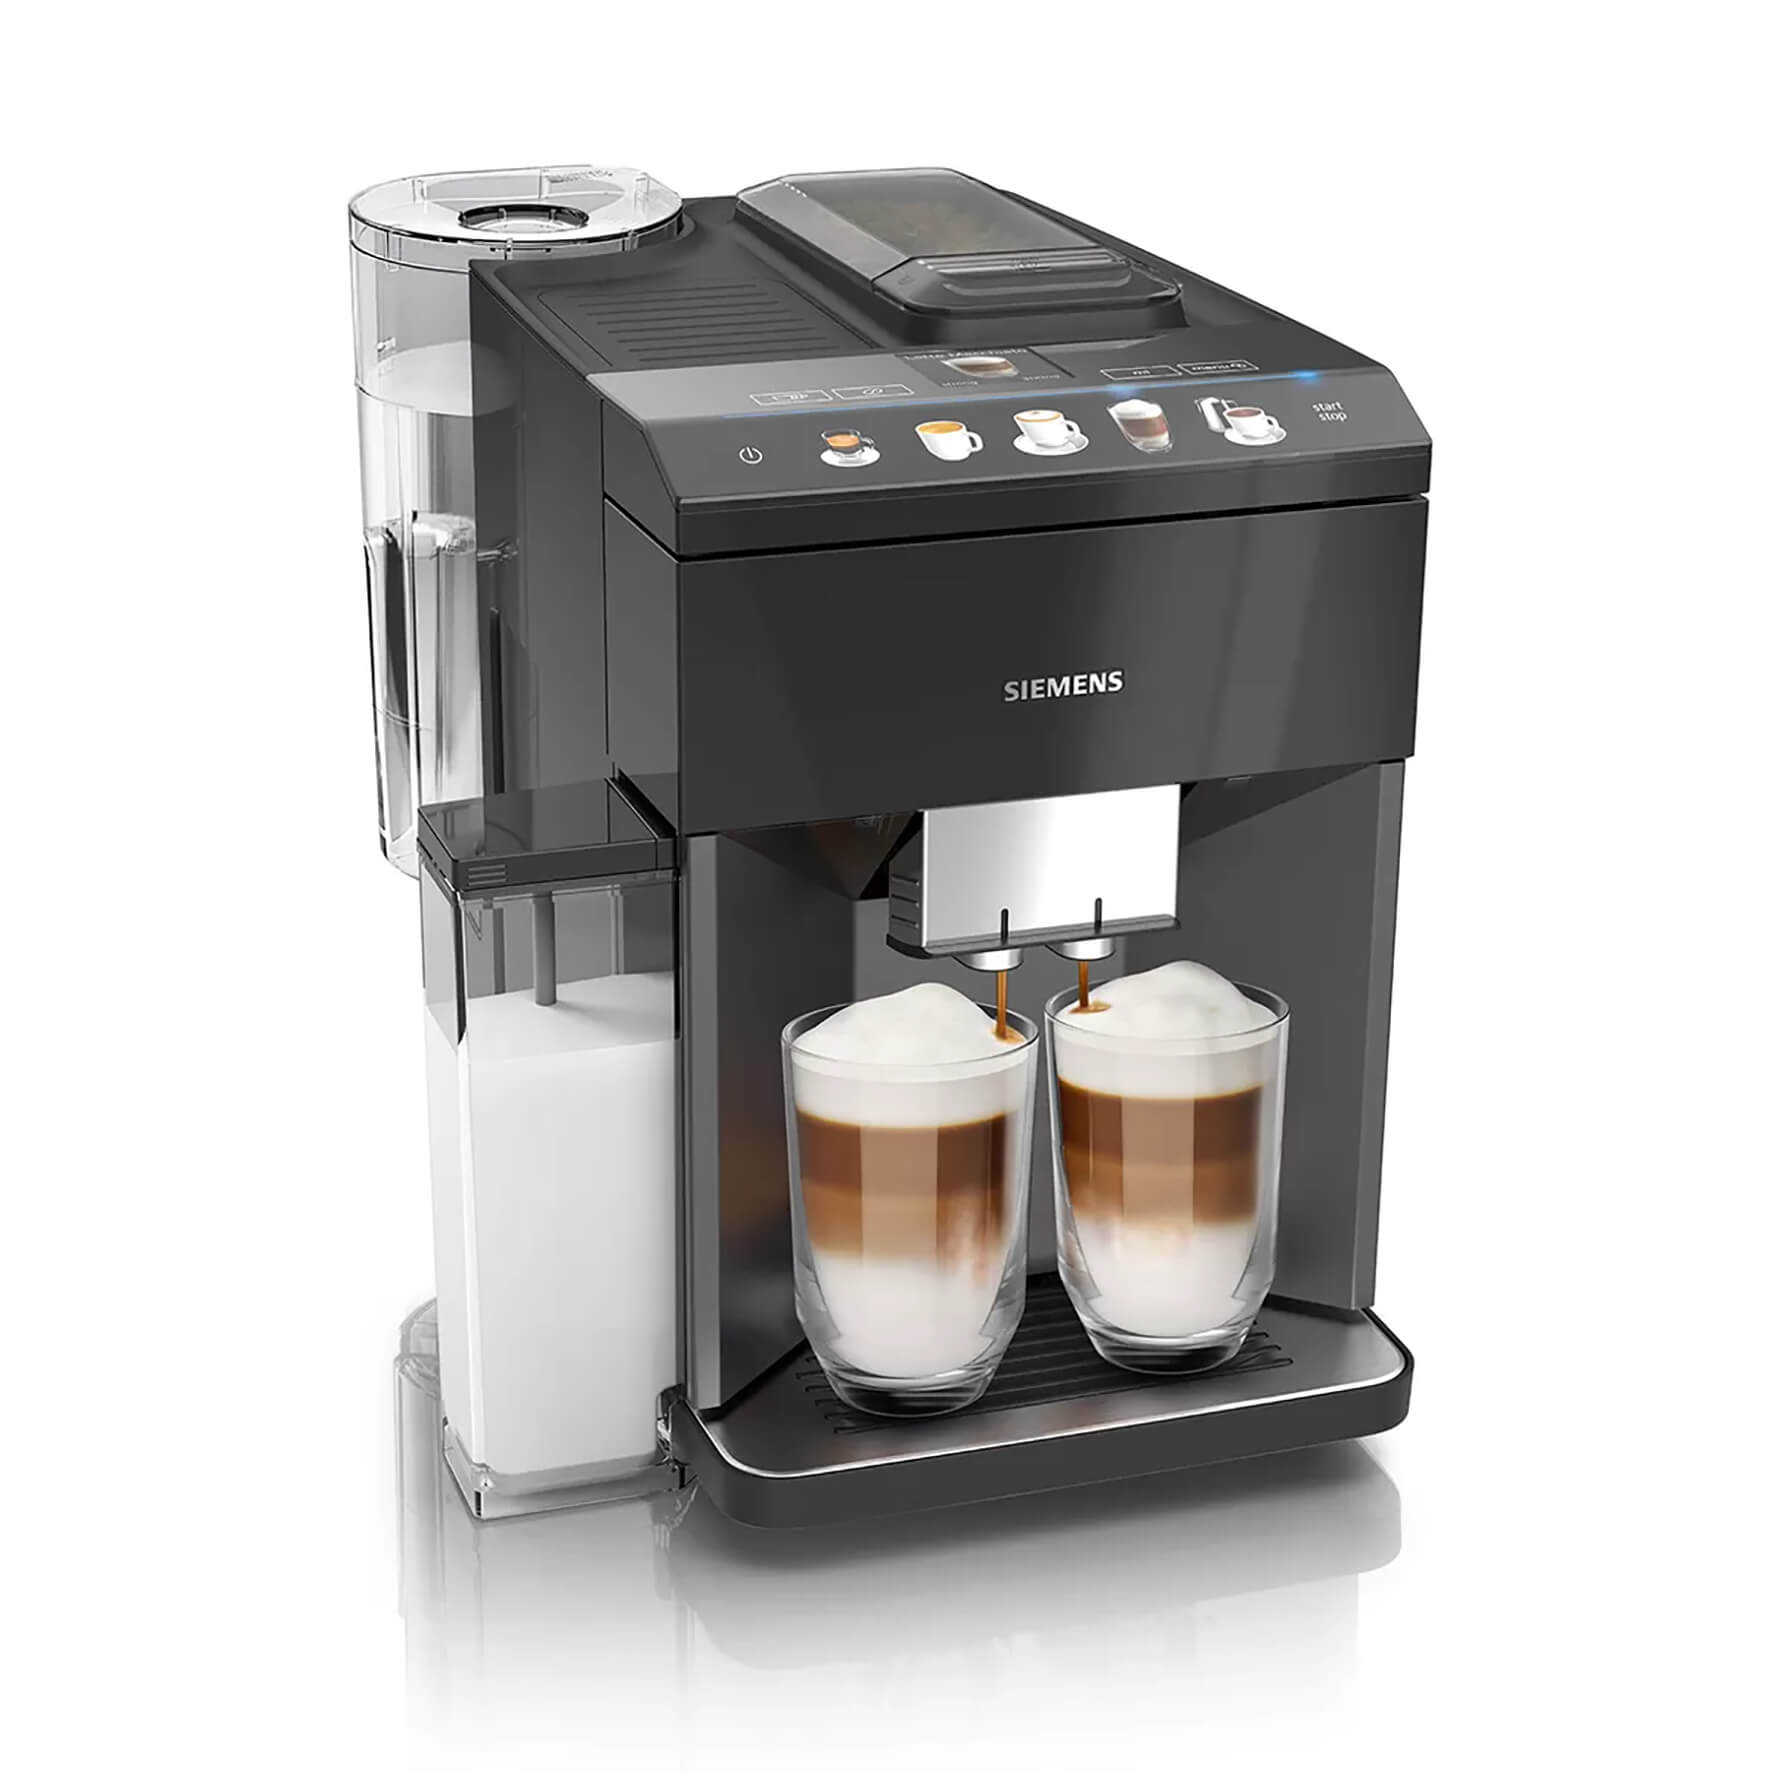 Siemens Coffee Machine Black TQ505R09